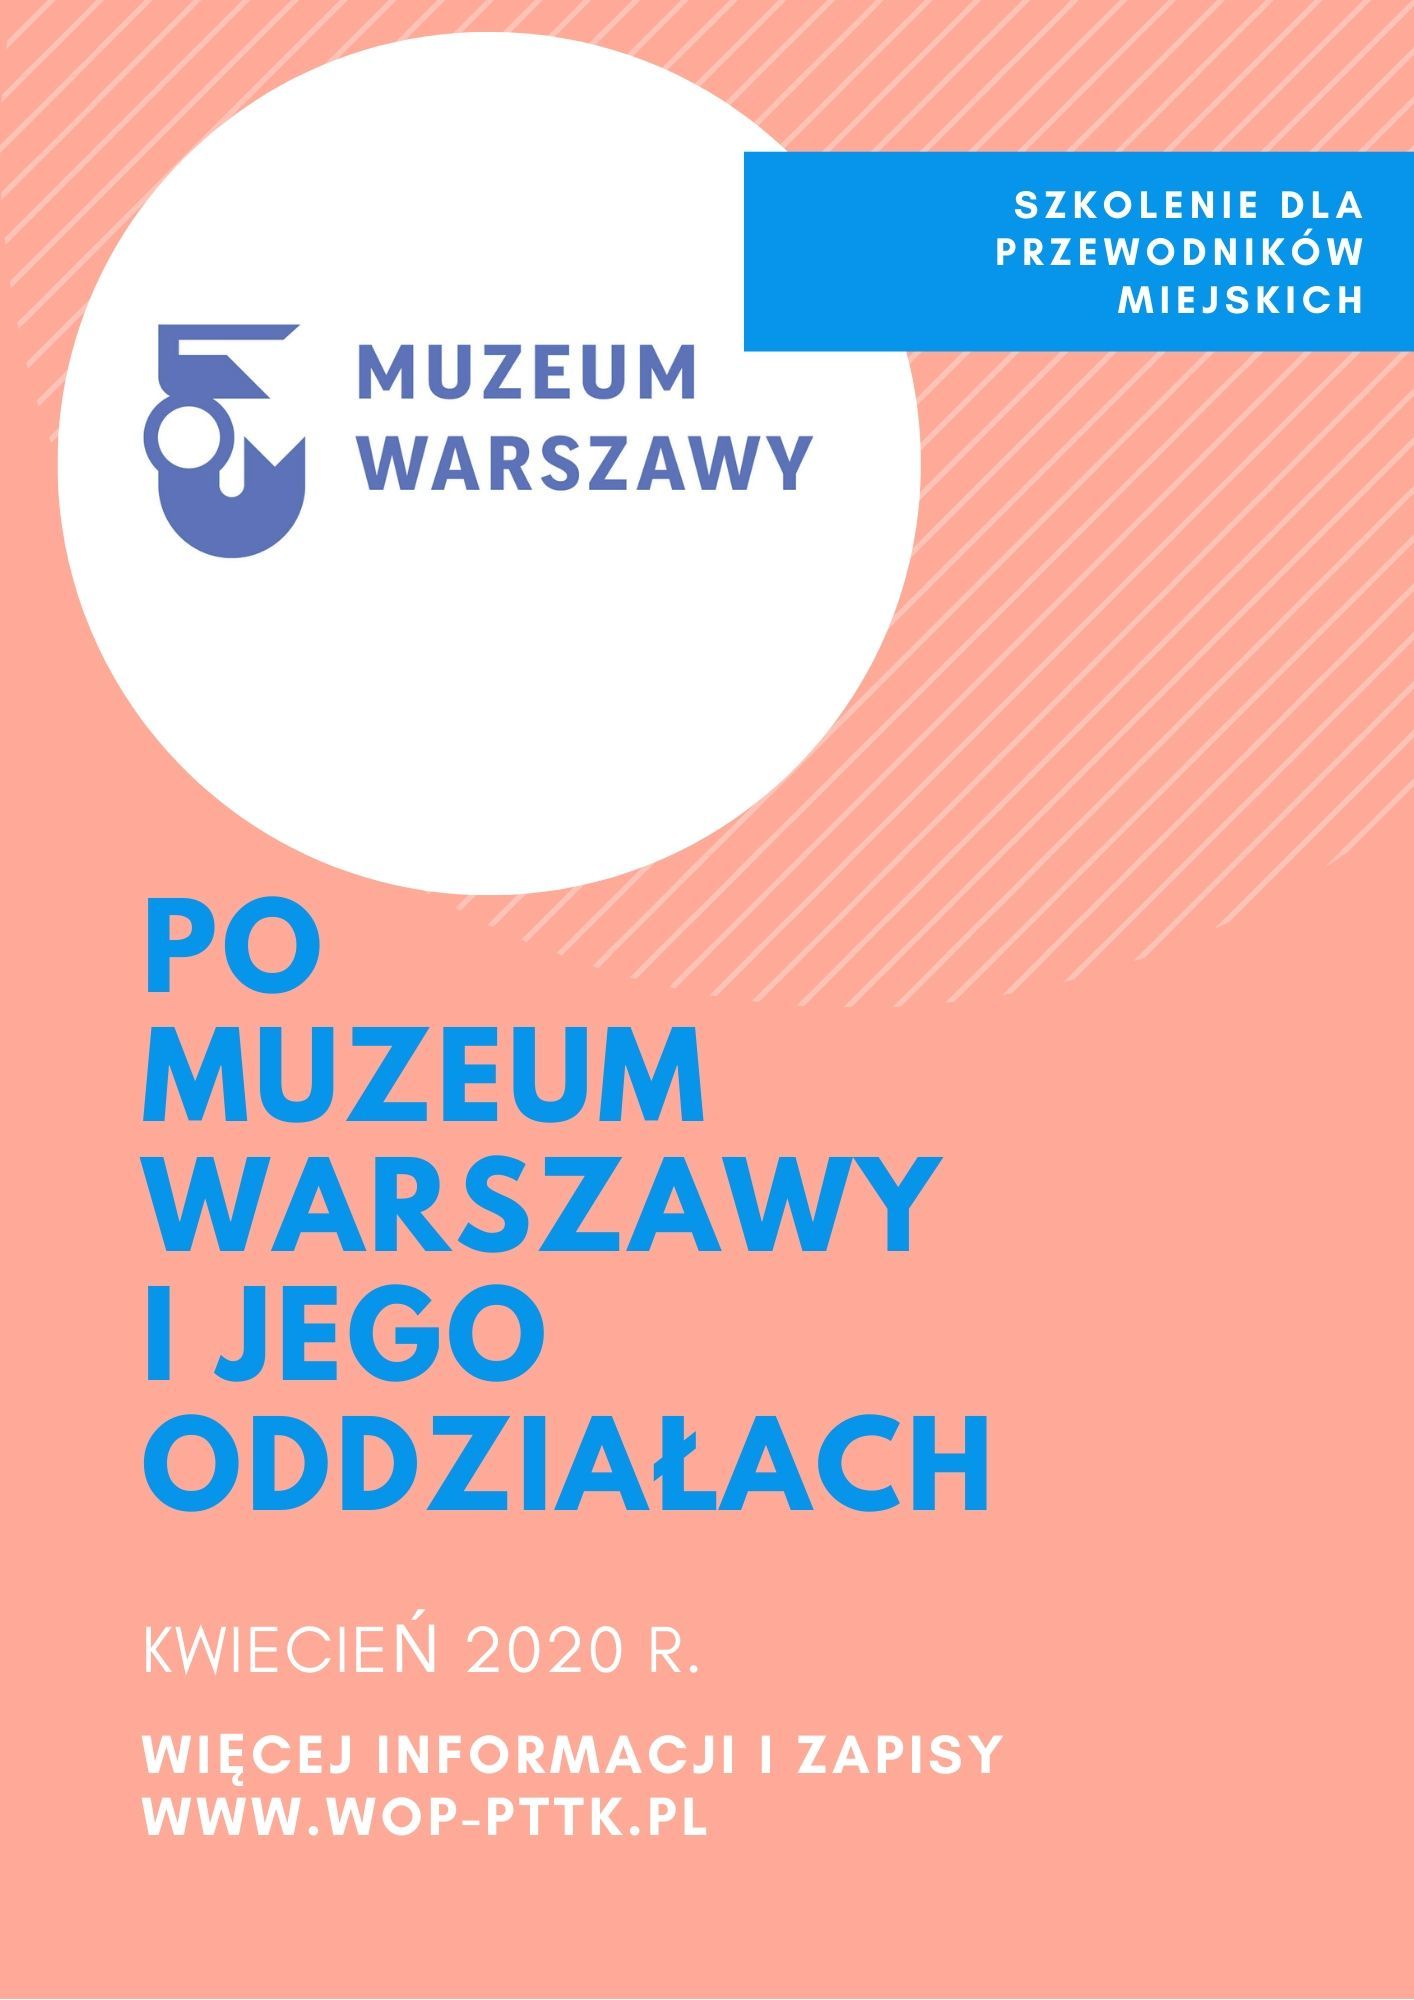 Szkolenie "Muzeum Warszawy" - kwiecień 2020 r.